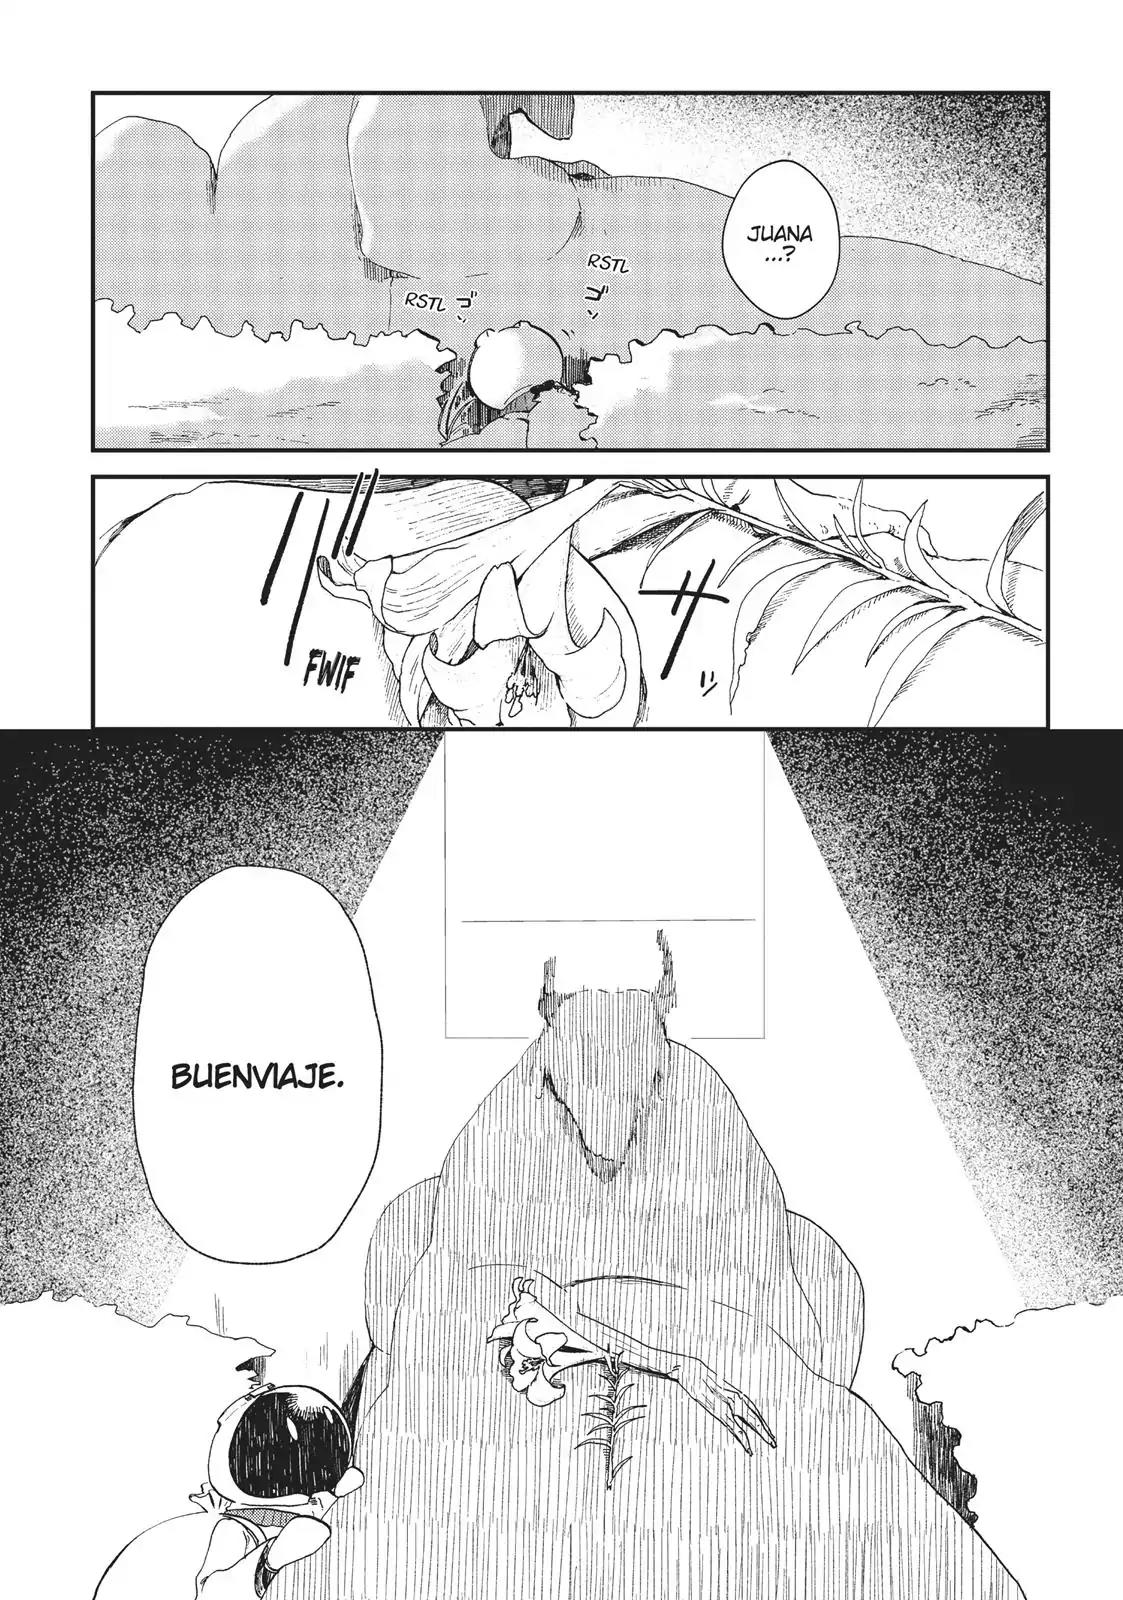 Ryuu no Nanakuni to Minashigo no Juana Vol.1 Chapter 4